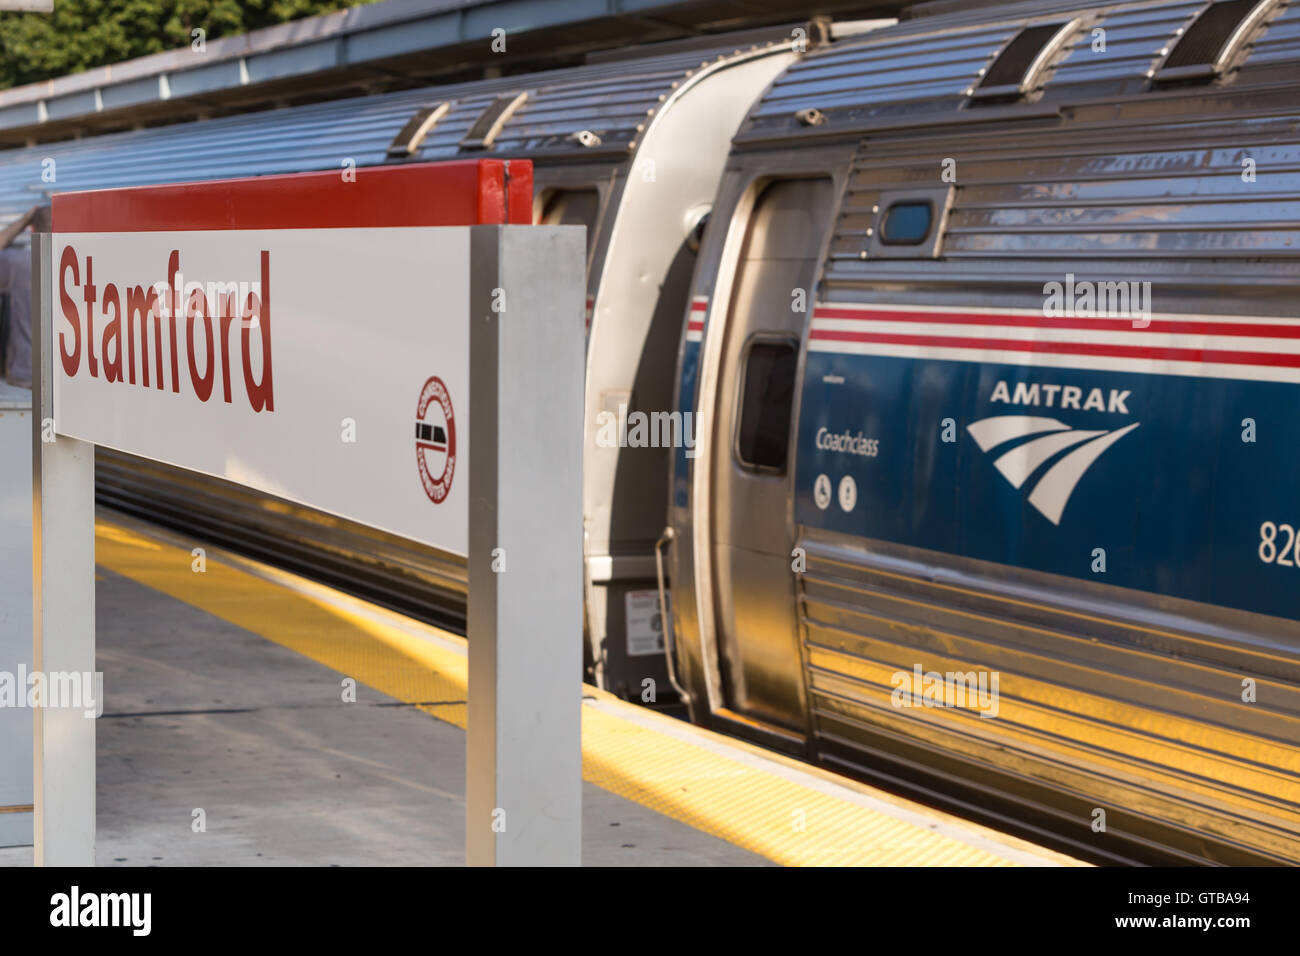 Un train régional en direction nord nord-est de l'Amtrak prend de la vitesse qu'elle s'écarte de la gare de Stamford à Stamford, Connecticut. Banque D'Images